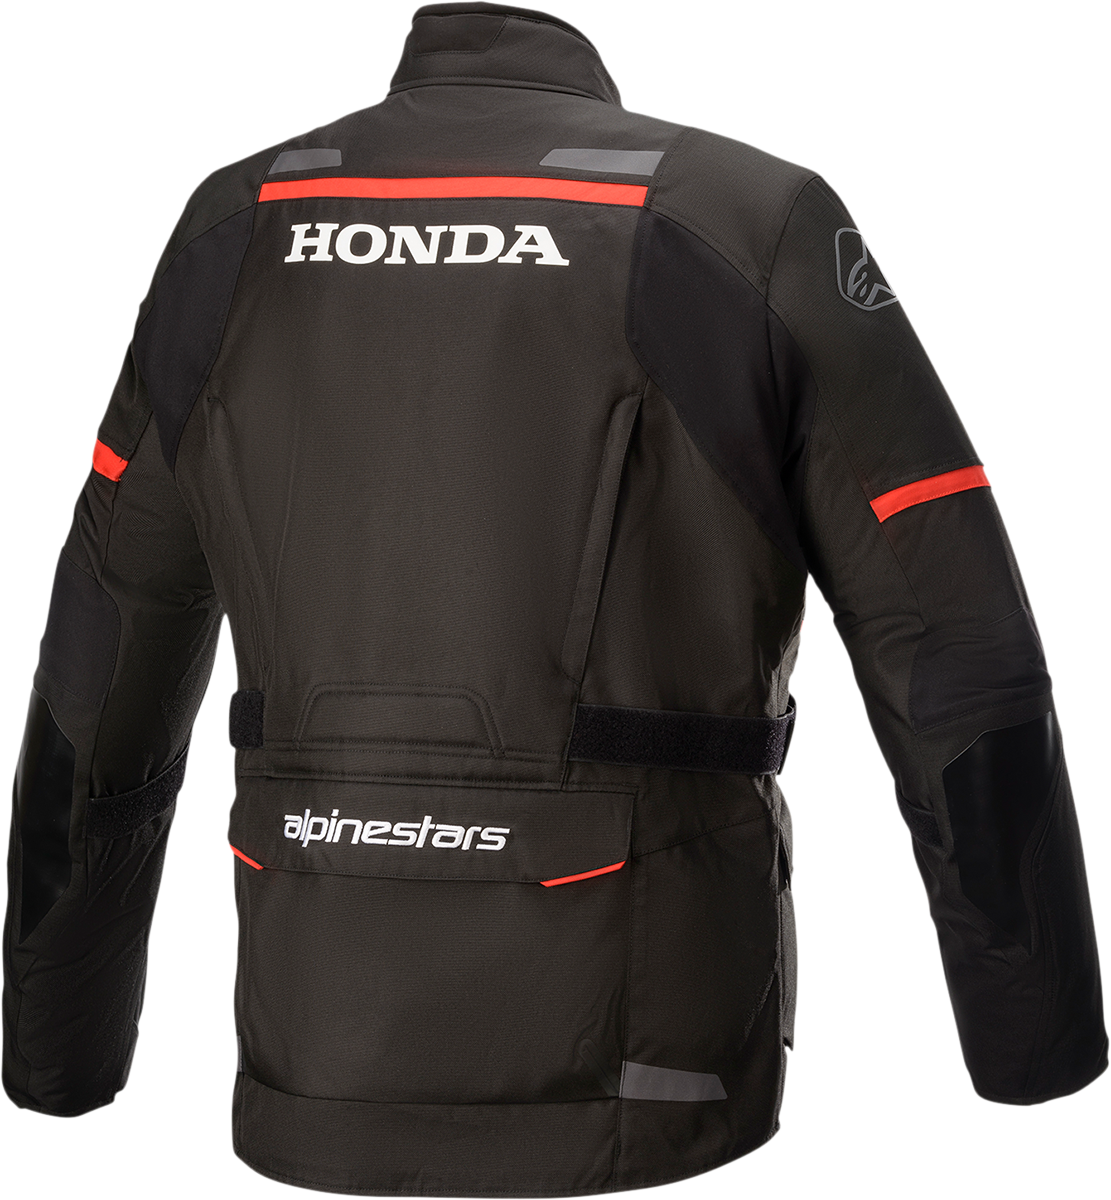 ALPINESTARS Honda Andes v3 Drystar® Jacket - Black - Medium 3207421-10-M